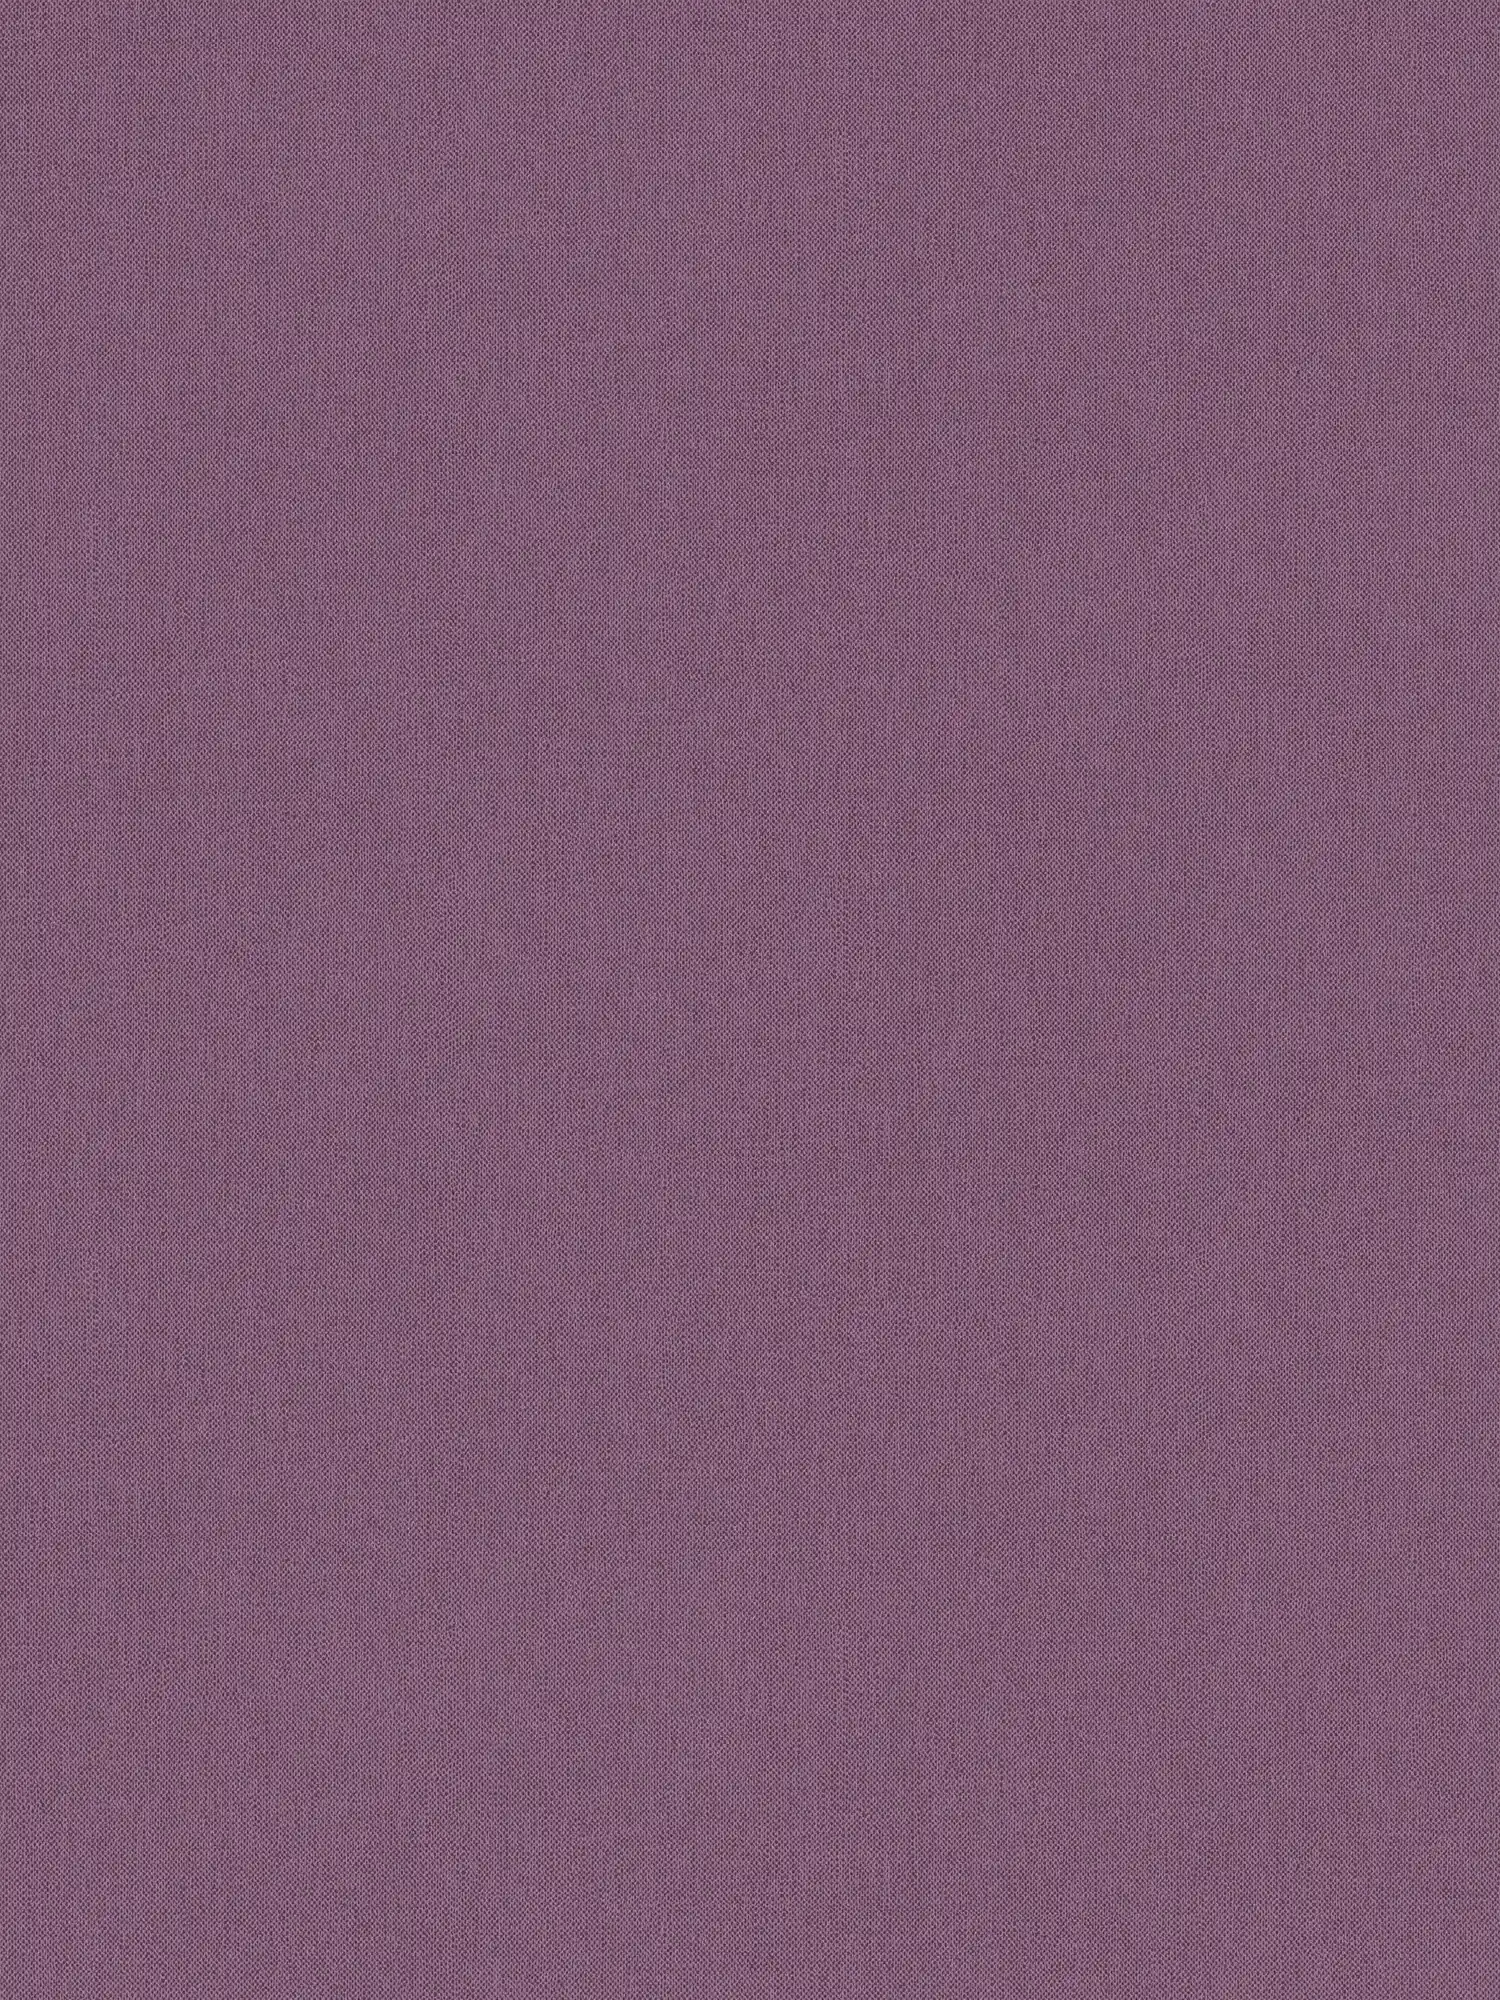 Purple wallpaper plain, matte textile look & fabric texture
